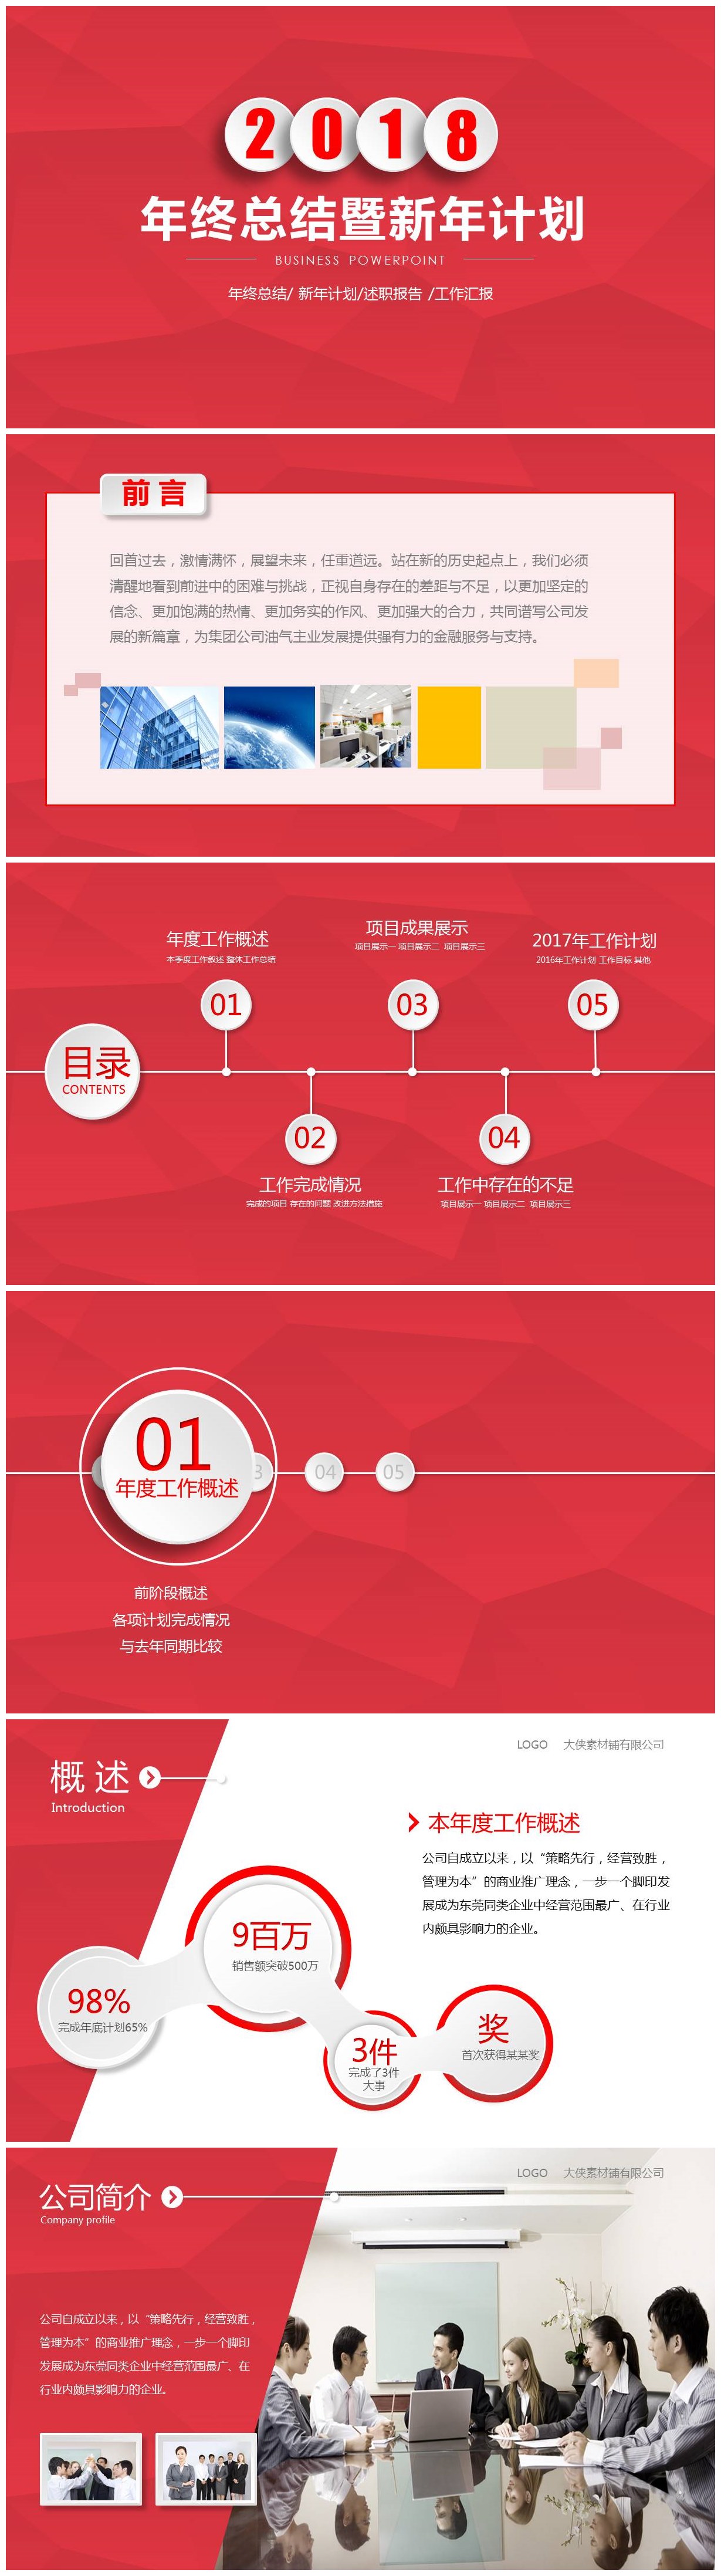 中国红年终总结暨新年计划ppt模板-聚给网